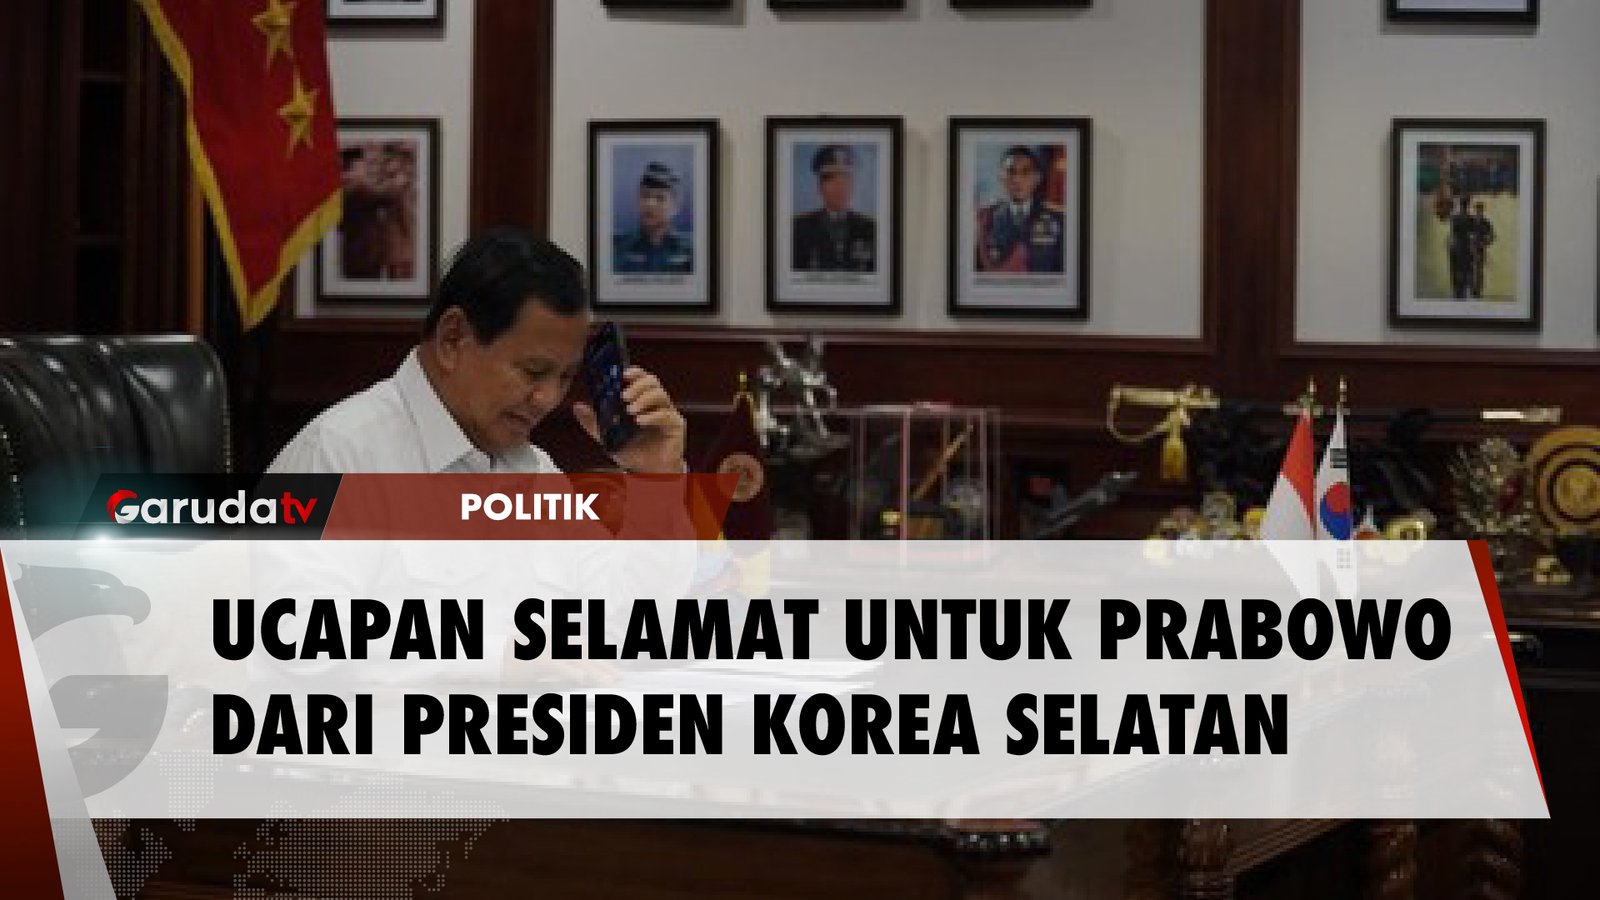 Presiden Korea Selatan Beri Ucapan Selamat Kepada Prabowo Atas KemenanganMenjadi Presiden Terpilih